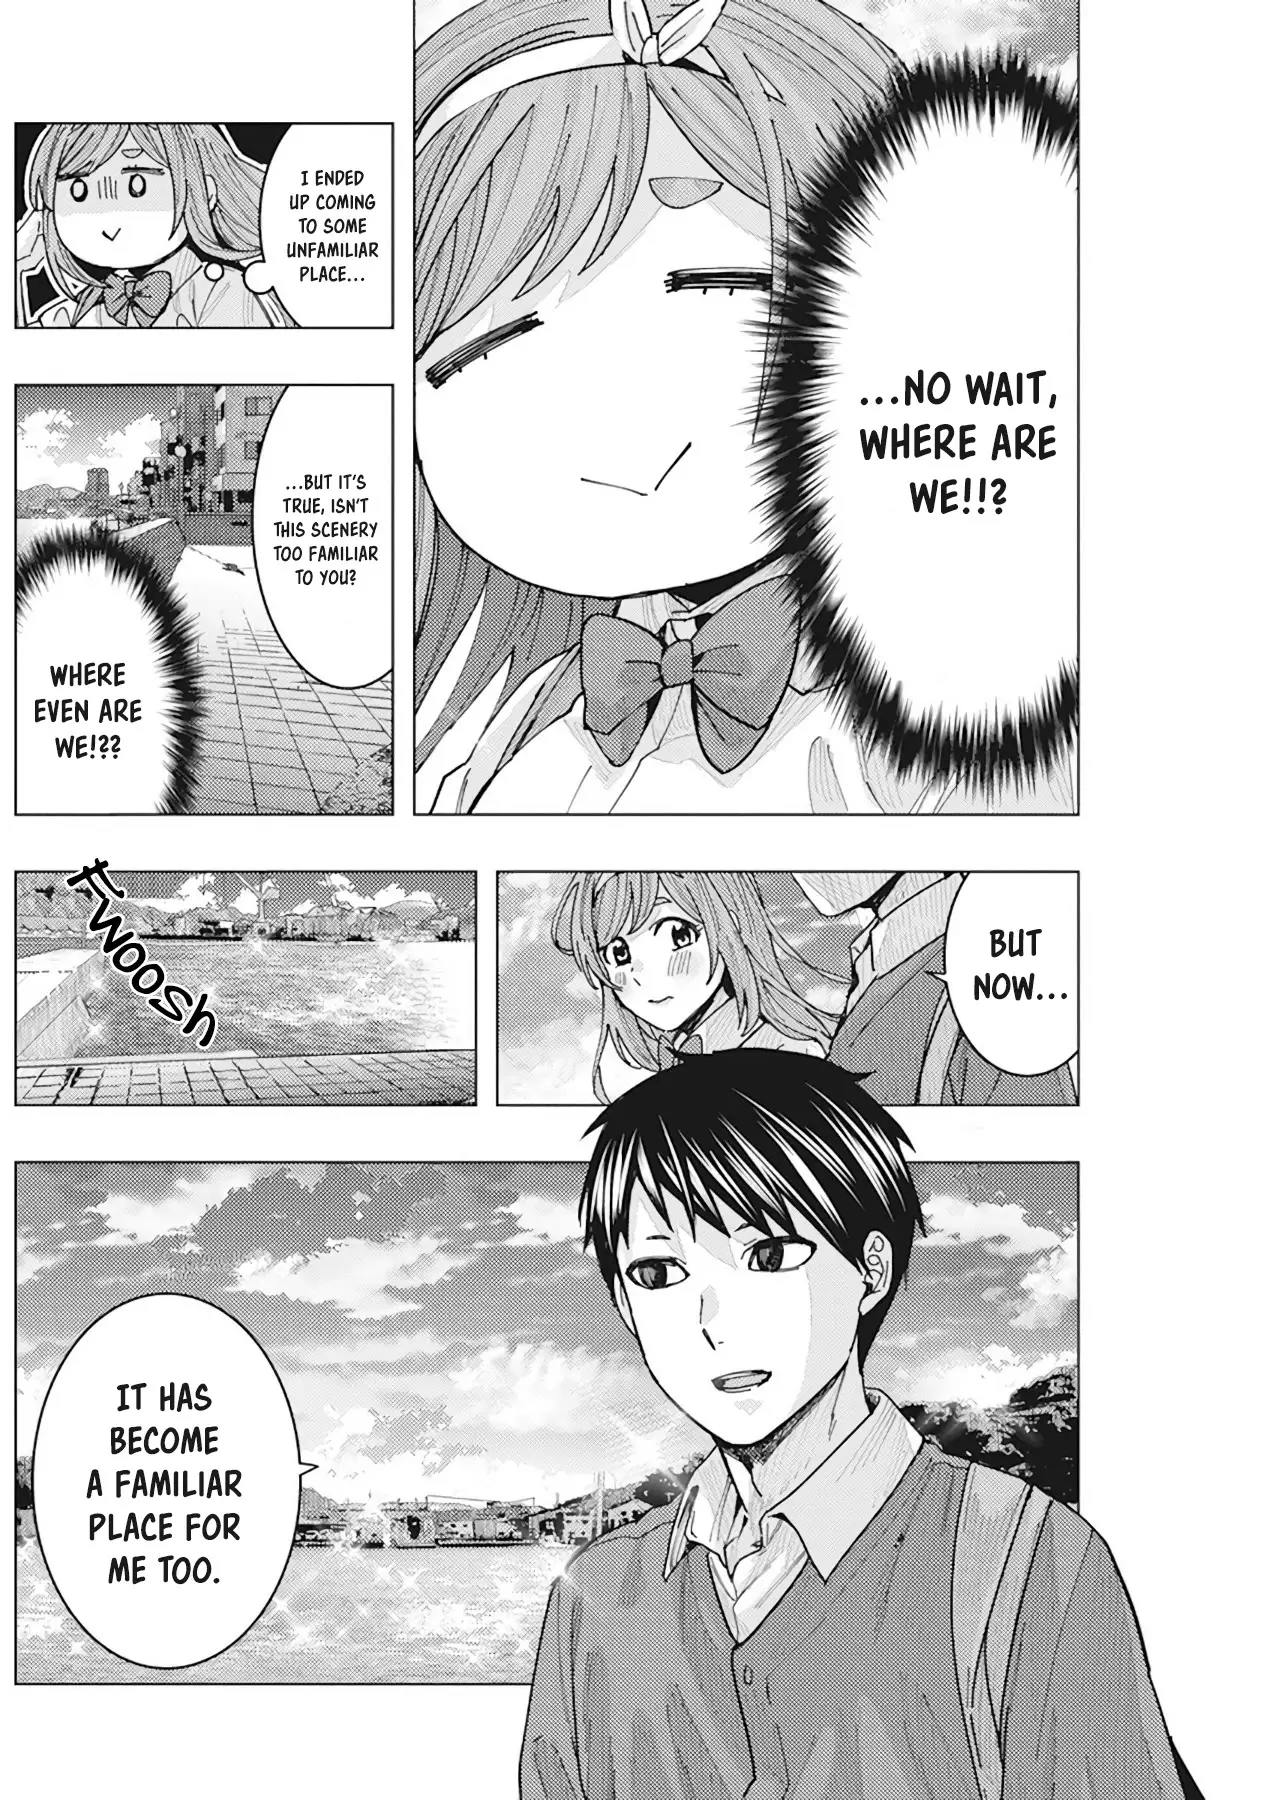 "nobukuni-San" Does She Like Me? - 10 page 10-eb704ce0